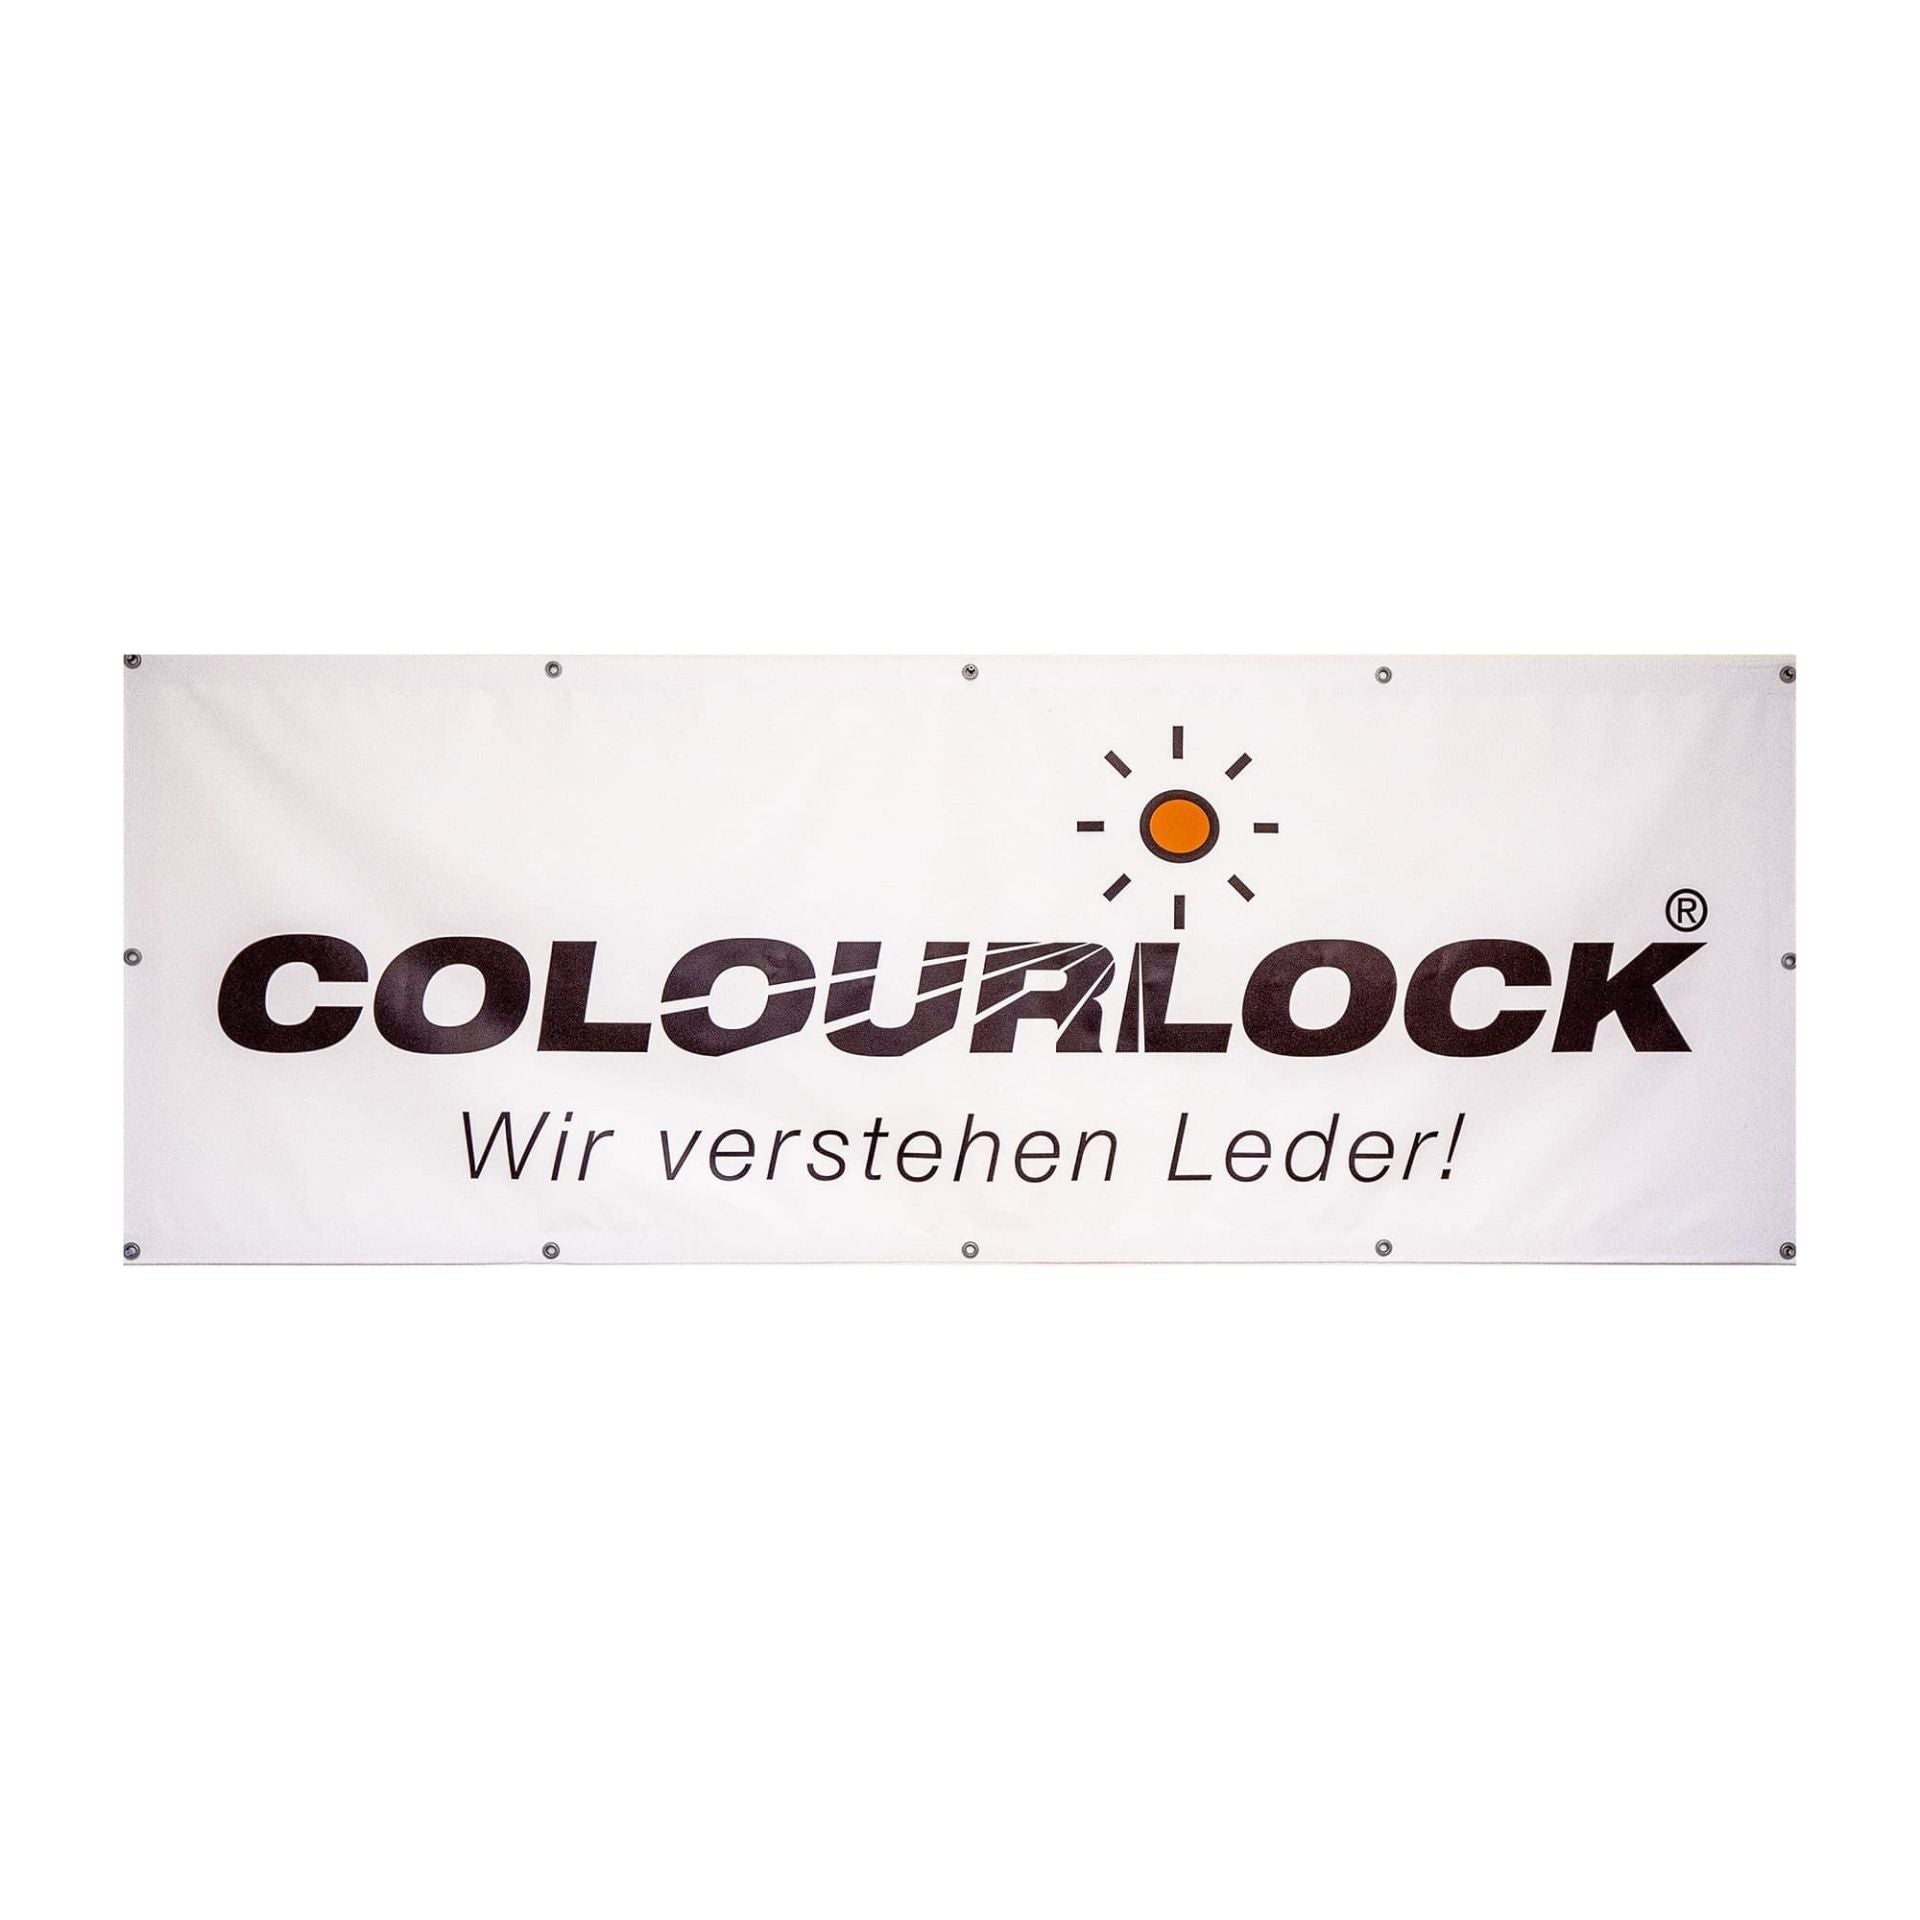 Colourlock Wall Banner